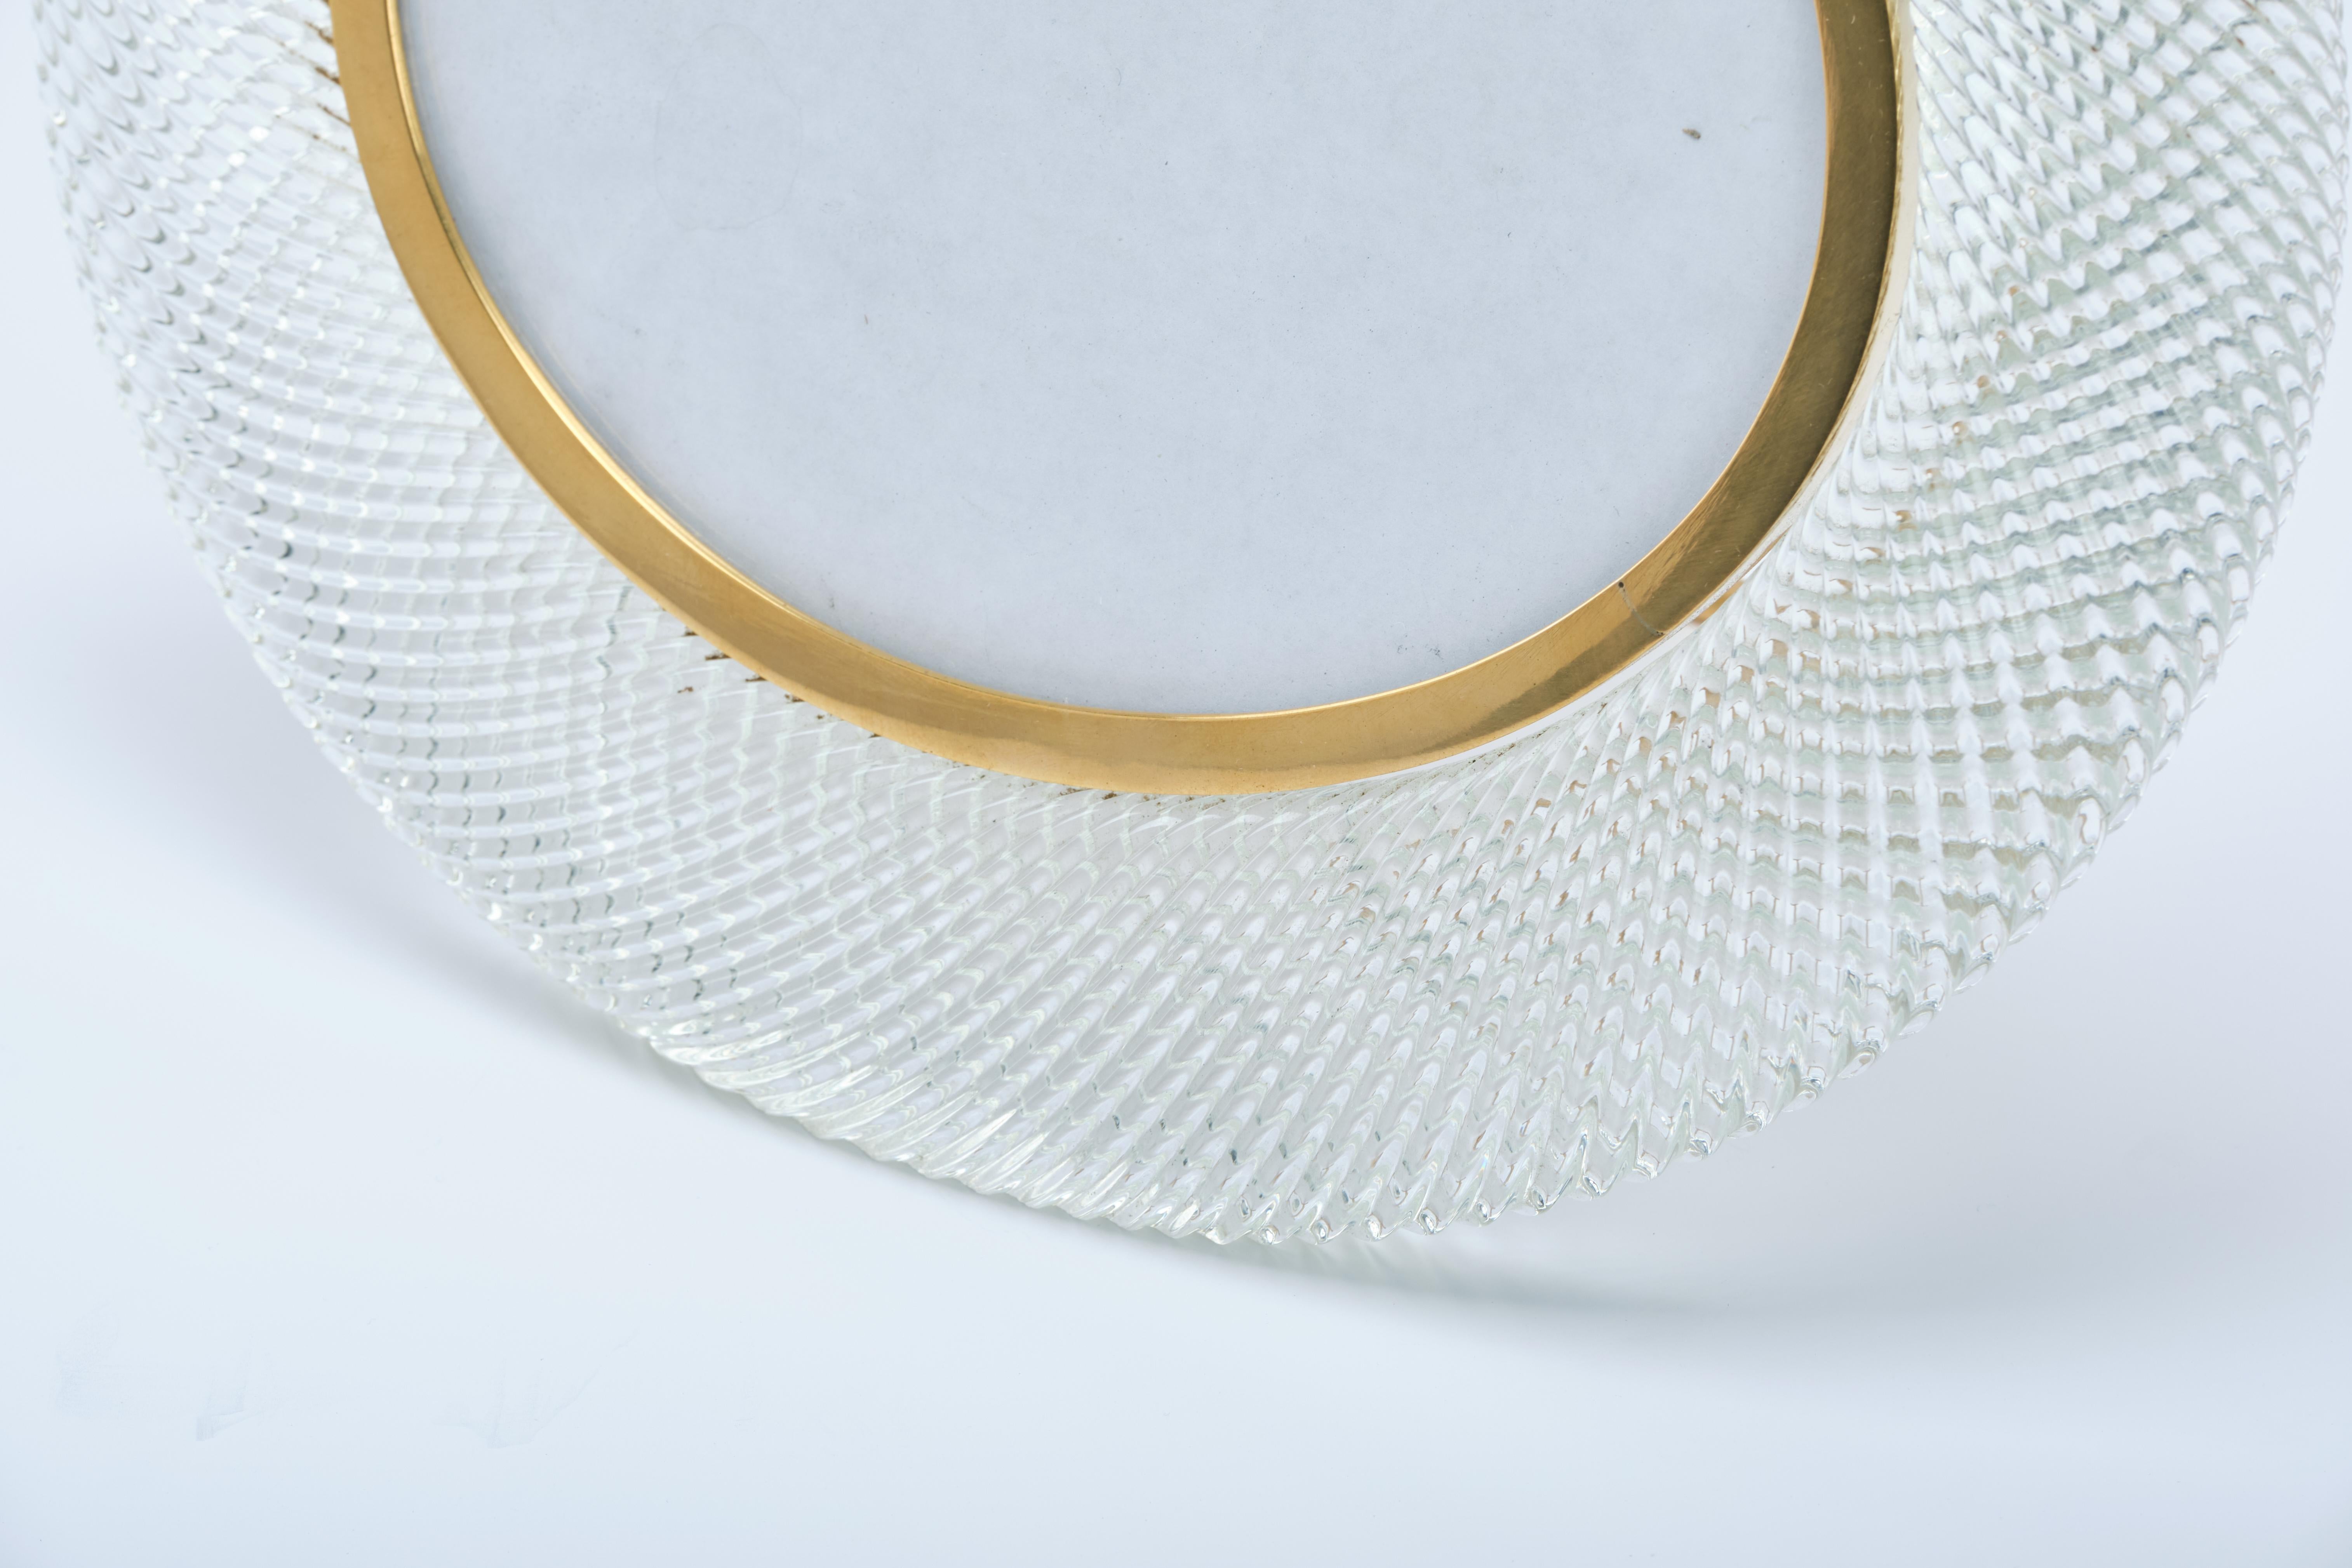 Cadre ovale Archimede Seguso avec une structure en verre torsadé transparent. Monture en laiton. Fabriqué en Italie, vers 1950 

Maître verrier, designer et entrepreneur, Archimede Seguso est à l'origine de la redécouverte de la fabrication à la